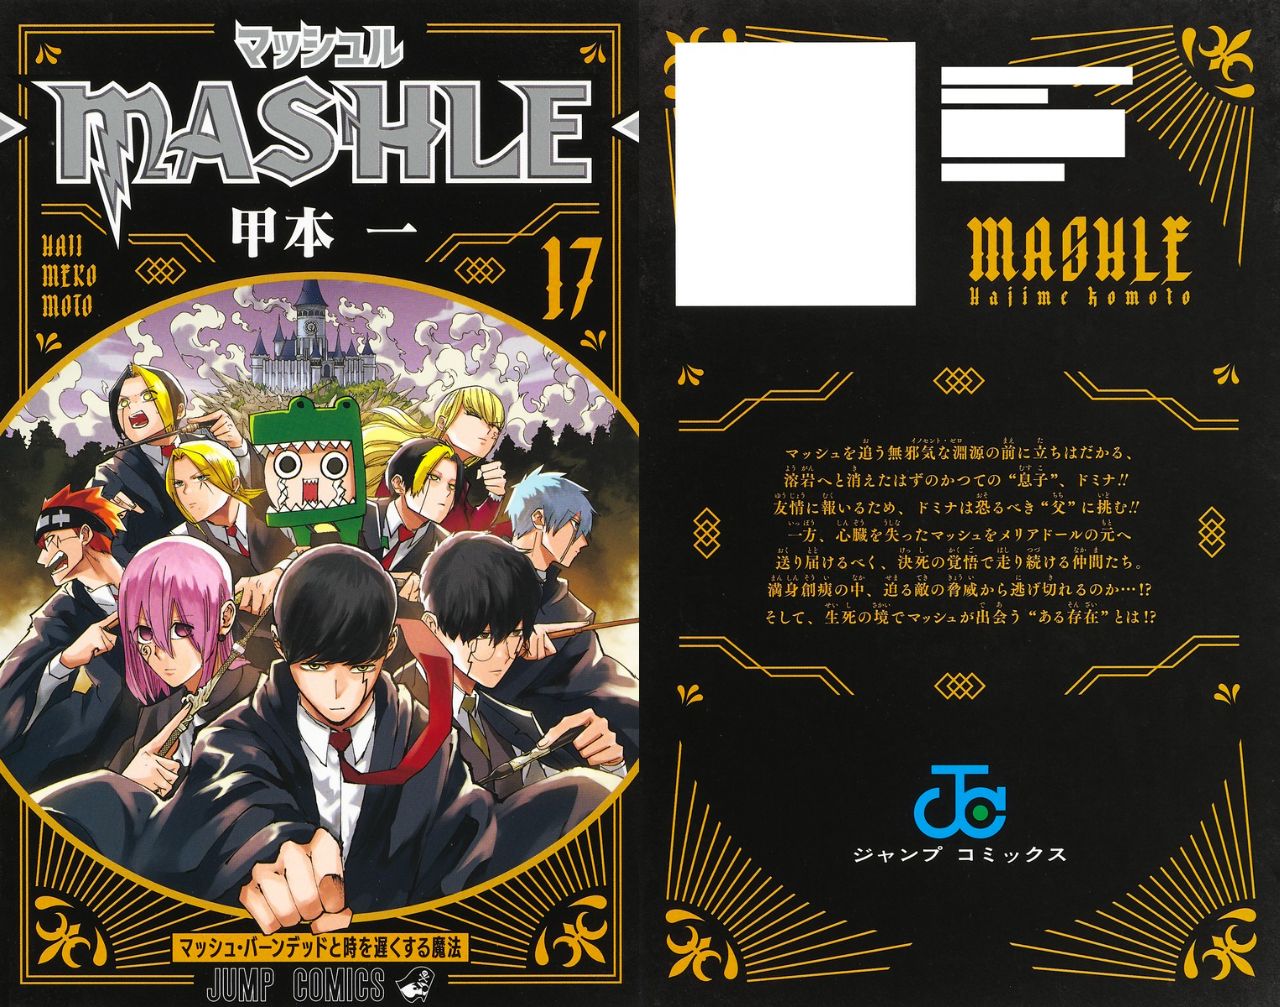 甲本一「マッシュル -MASHLE-」第17巻 2023年7月4日発売!